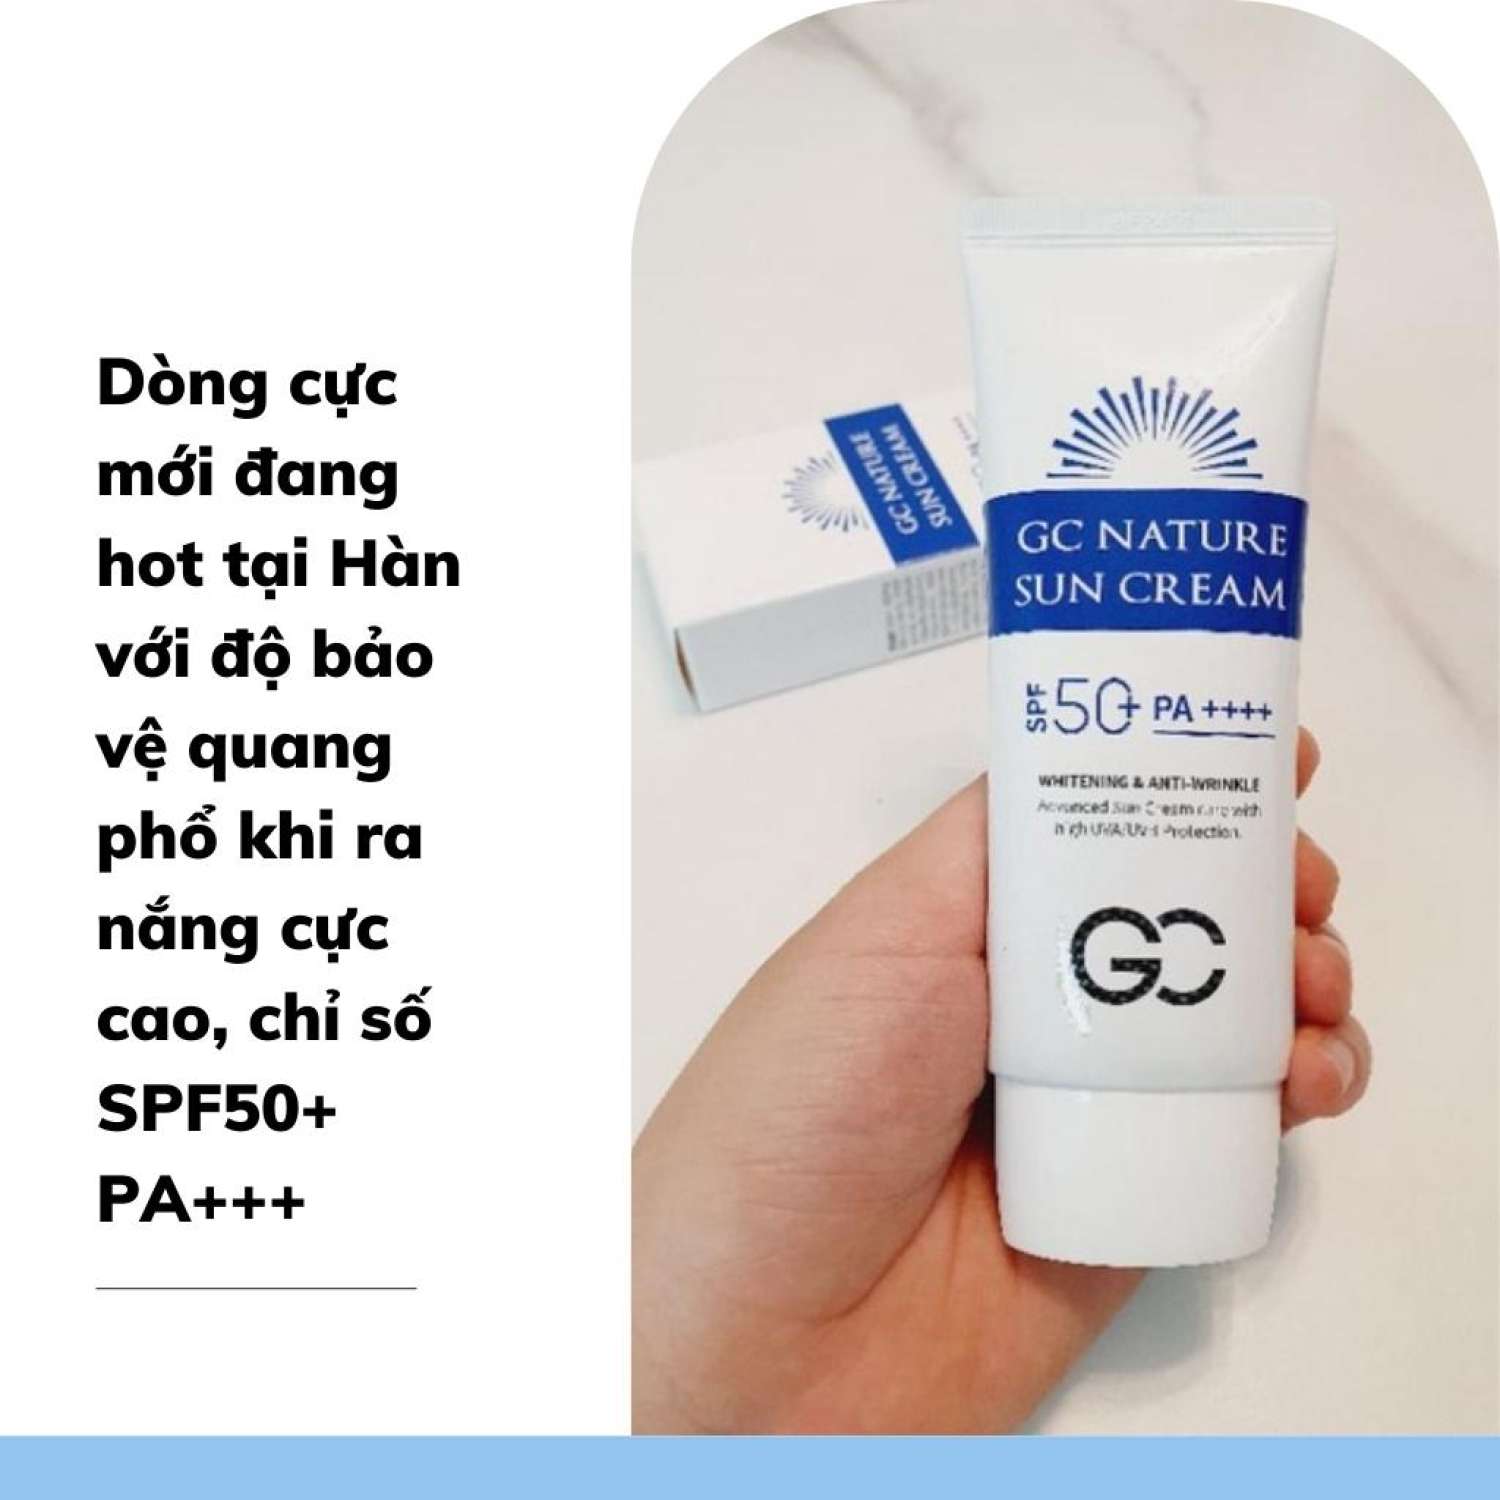 Kem chống nắng nâng tông da GC Nature Sun Cream SPF 50+ PA++++ 60ml Hàn Quốc - Chính hãng